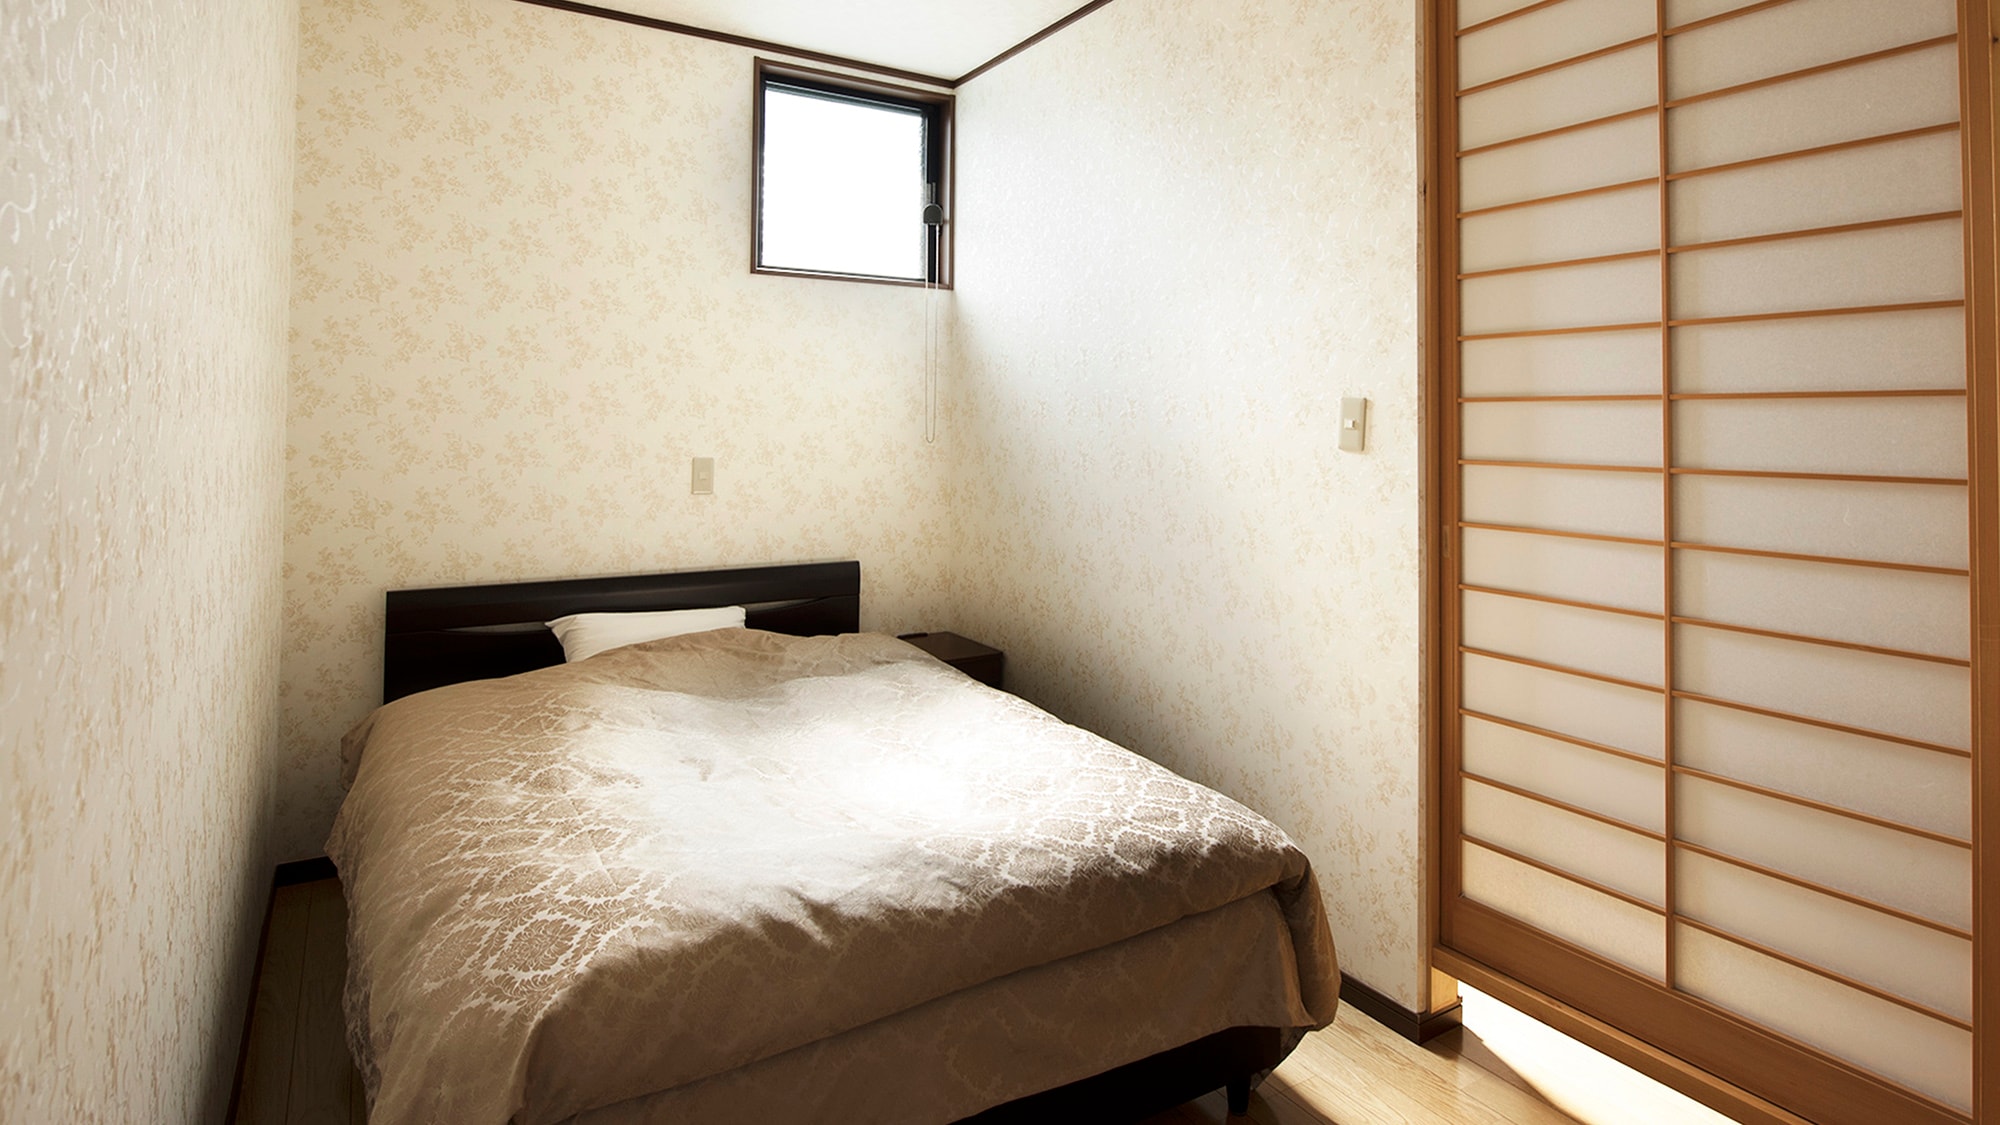 ・ ห้อง "ซากุระ": มีห้องนอนด้วย